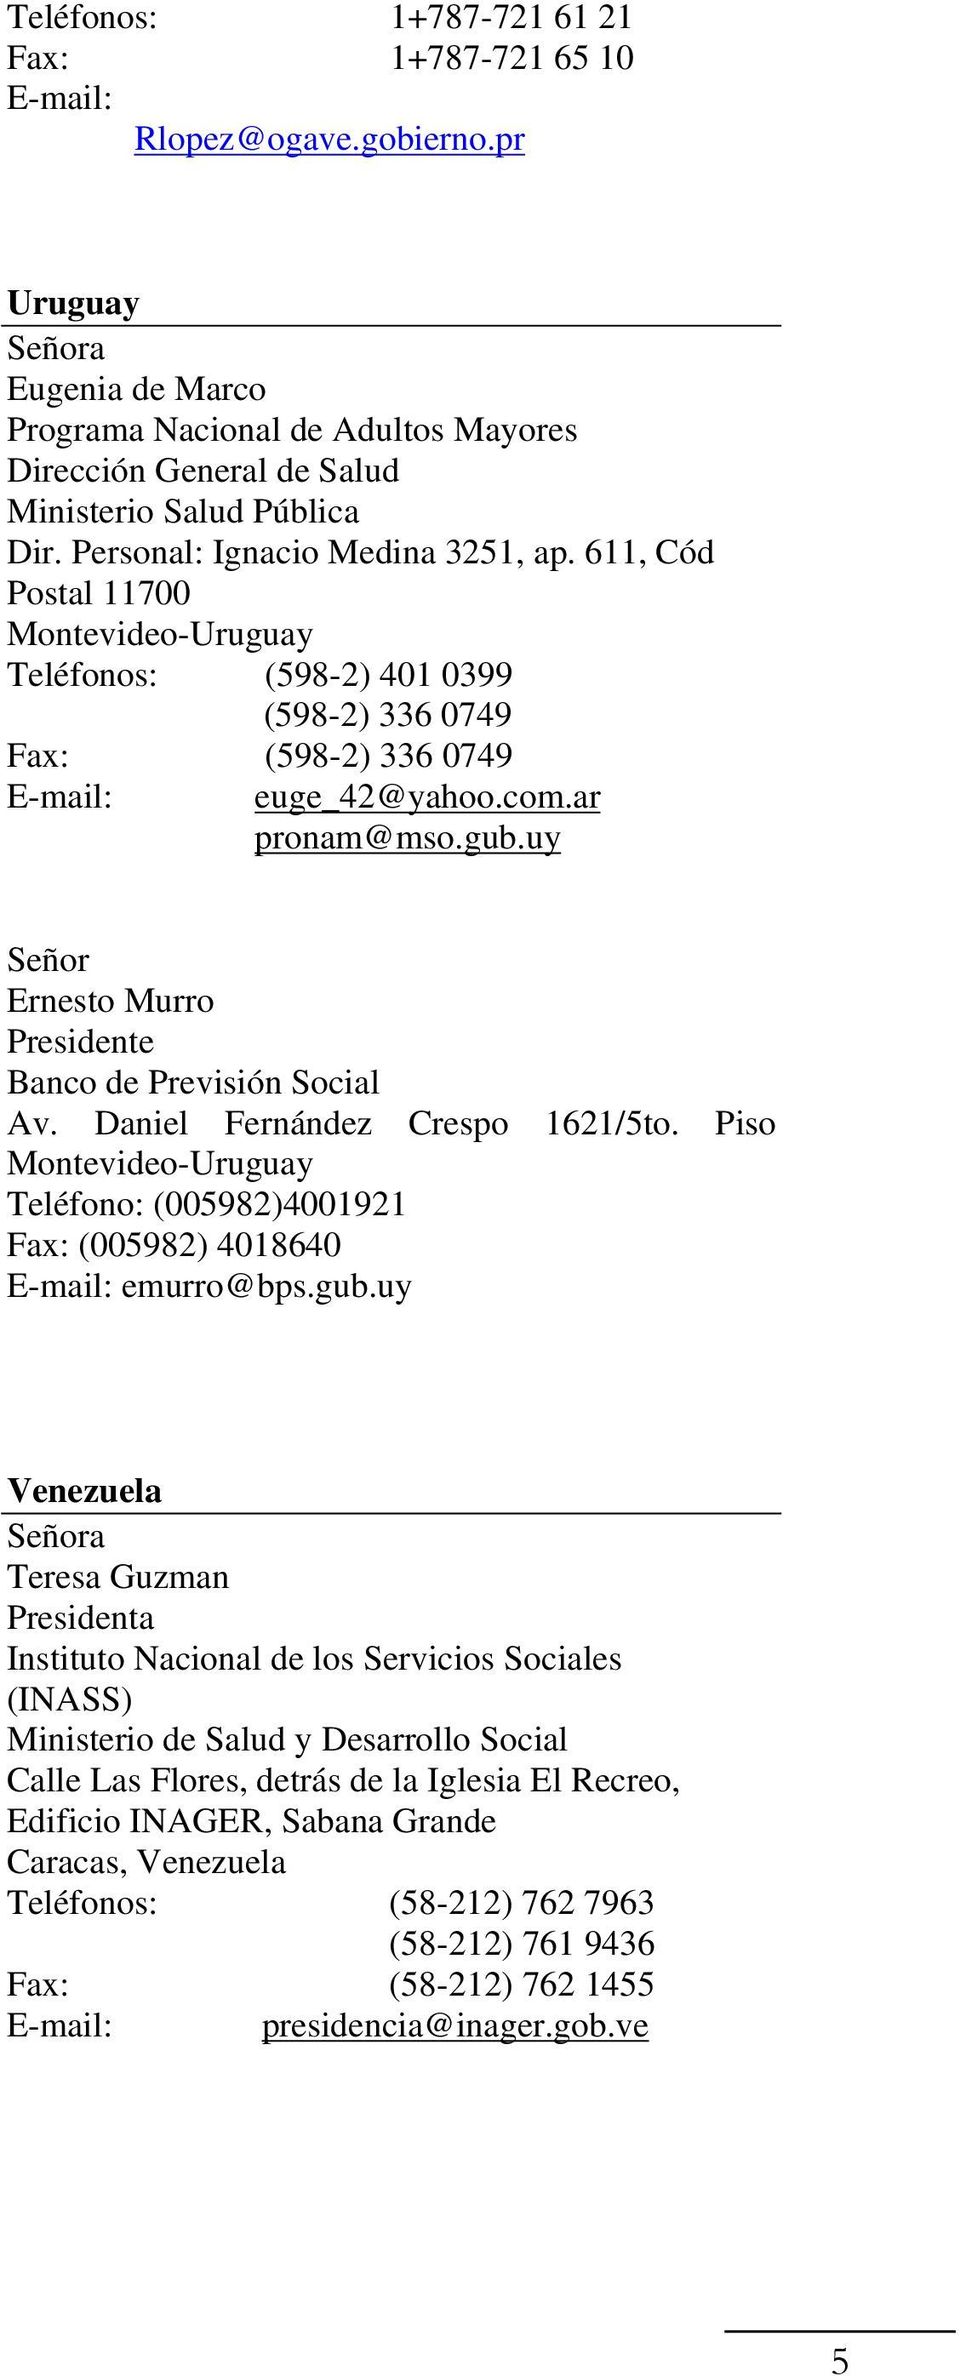 uy Ernesto Murro Presidente Banco de Previsión Social Av. Daniel Fernández Crespo 1621/5to. Piso Montevideo-Uruguay Teléfono: (005982)4001921 Fax: (005982) 4018640 emurro@bps.gub.